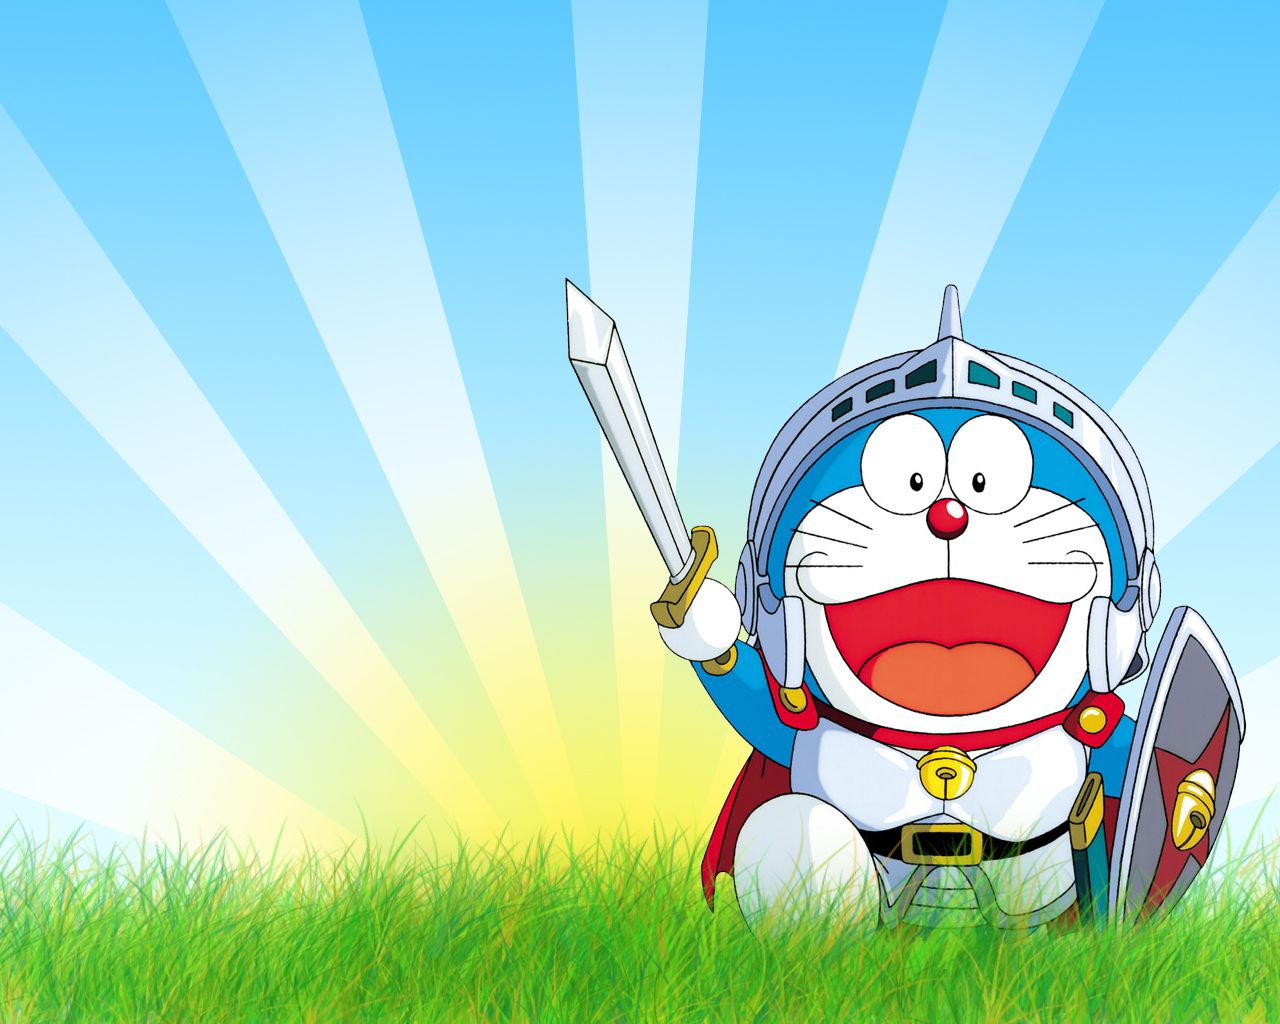 Doraemon là một trong những nhân vật được yêu thích nhất của tuổi thơ và bạn có thể tìm thấy nhiều hình ảnh độc đáo và làm mới về chú mèo máy thông minh này. Tìm hiểu thêm về các hình ảnh Doraemon thú vị để đem lại cảm giác trẻ trung và vui tươi cho cuộc sống của bạn.